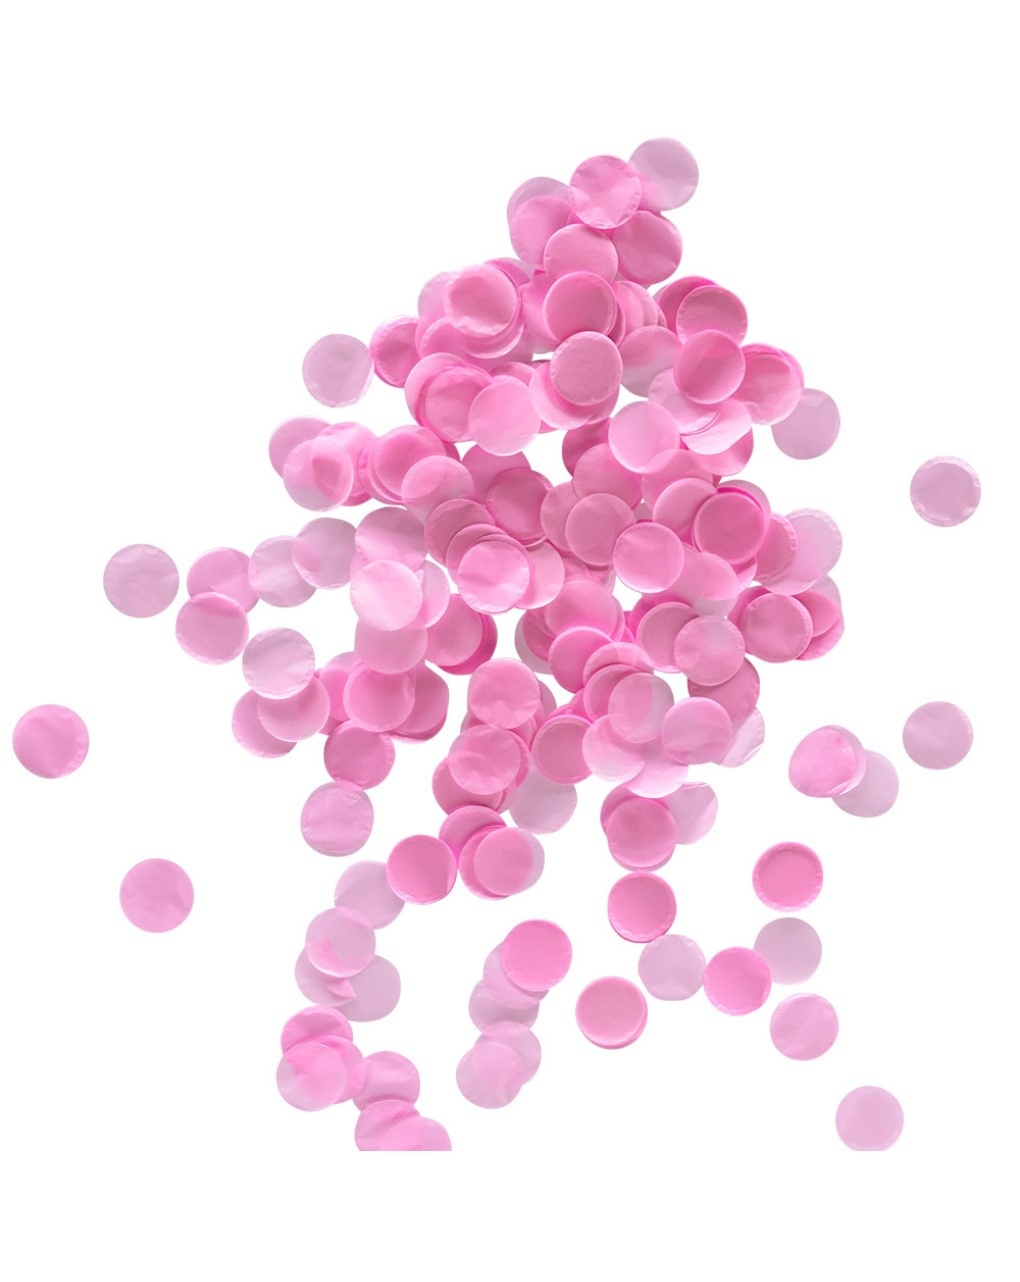 Pallone lattice d60 - coriandoli rosa reveal